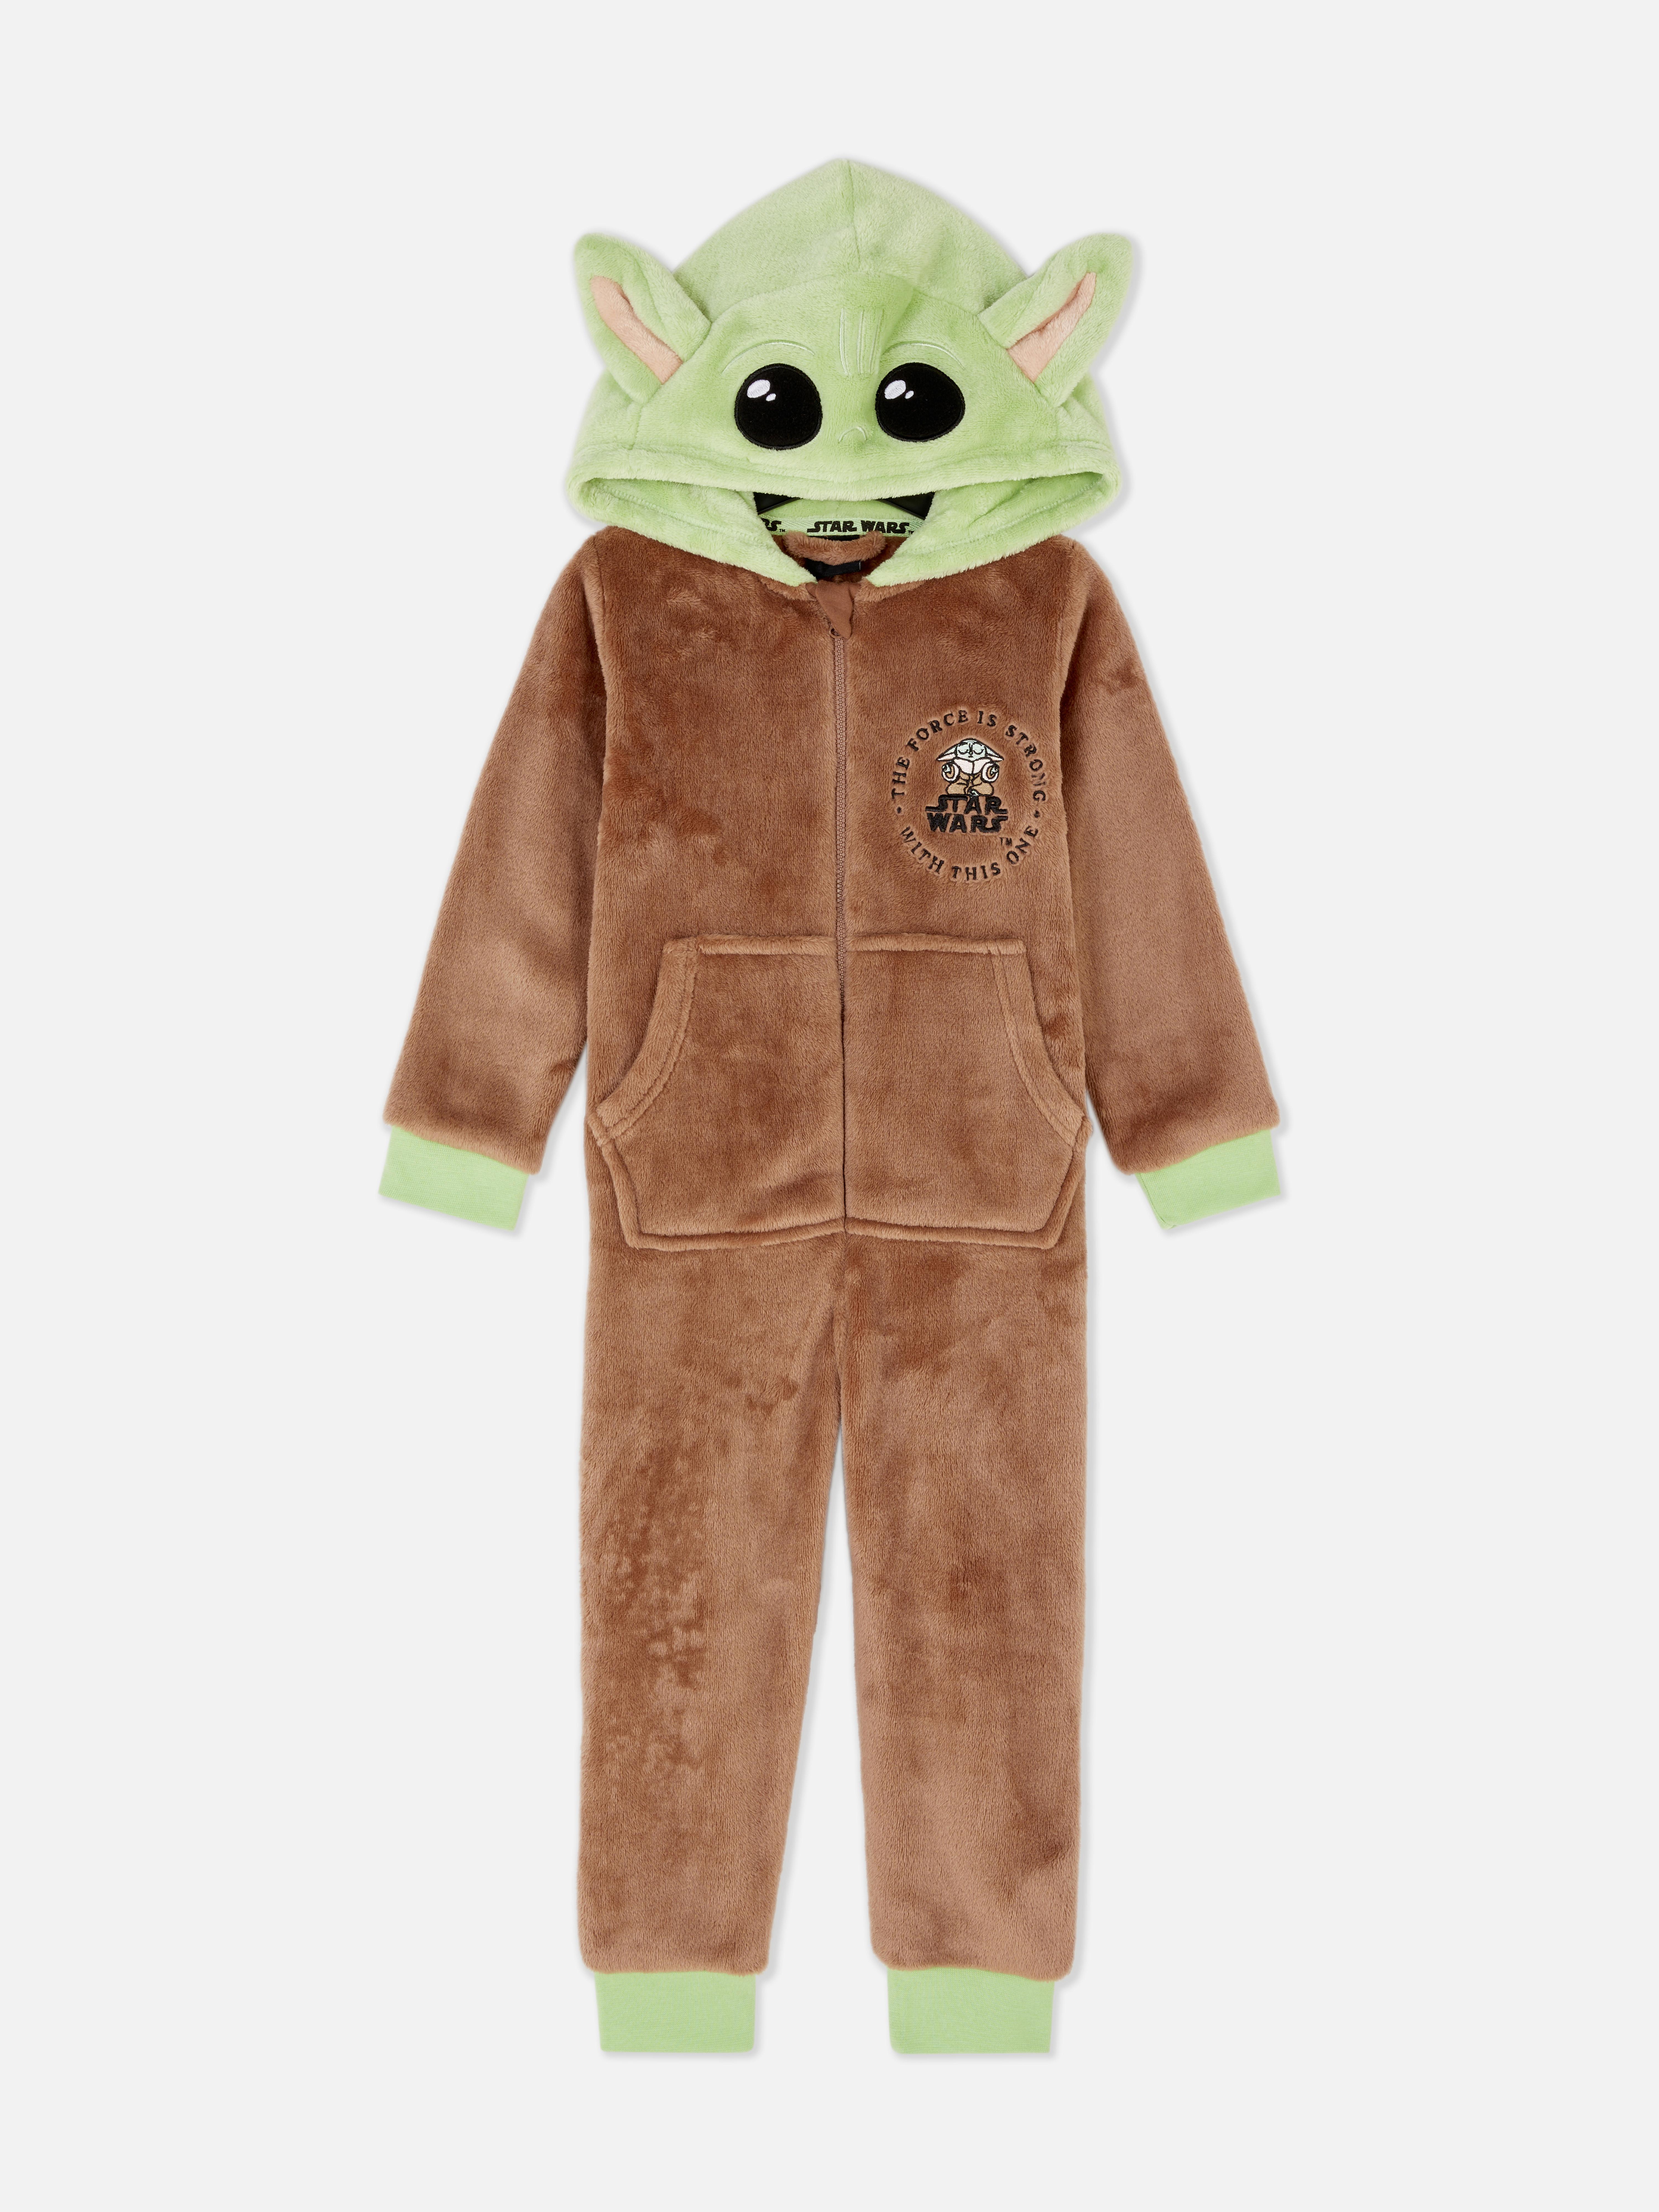 Star Wars Baby Yoda Dress Up Onesie